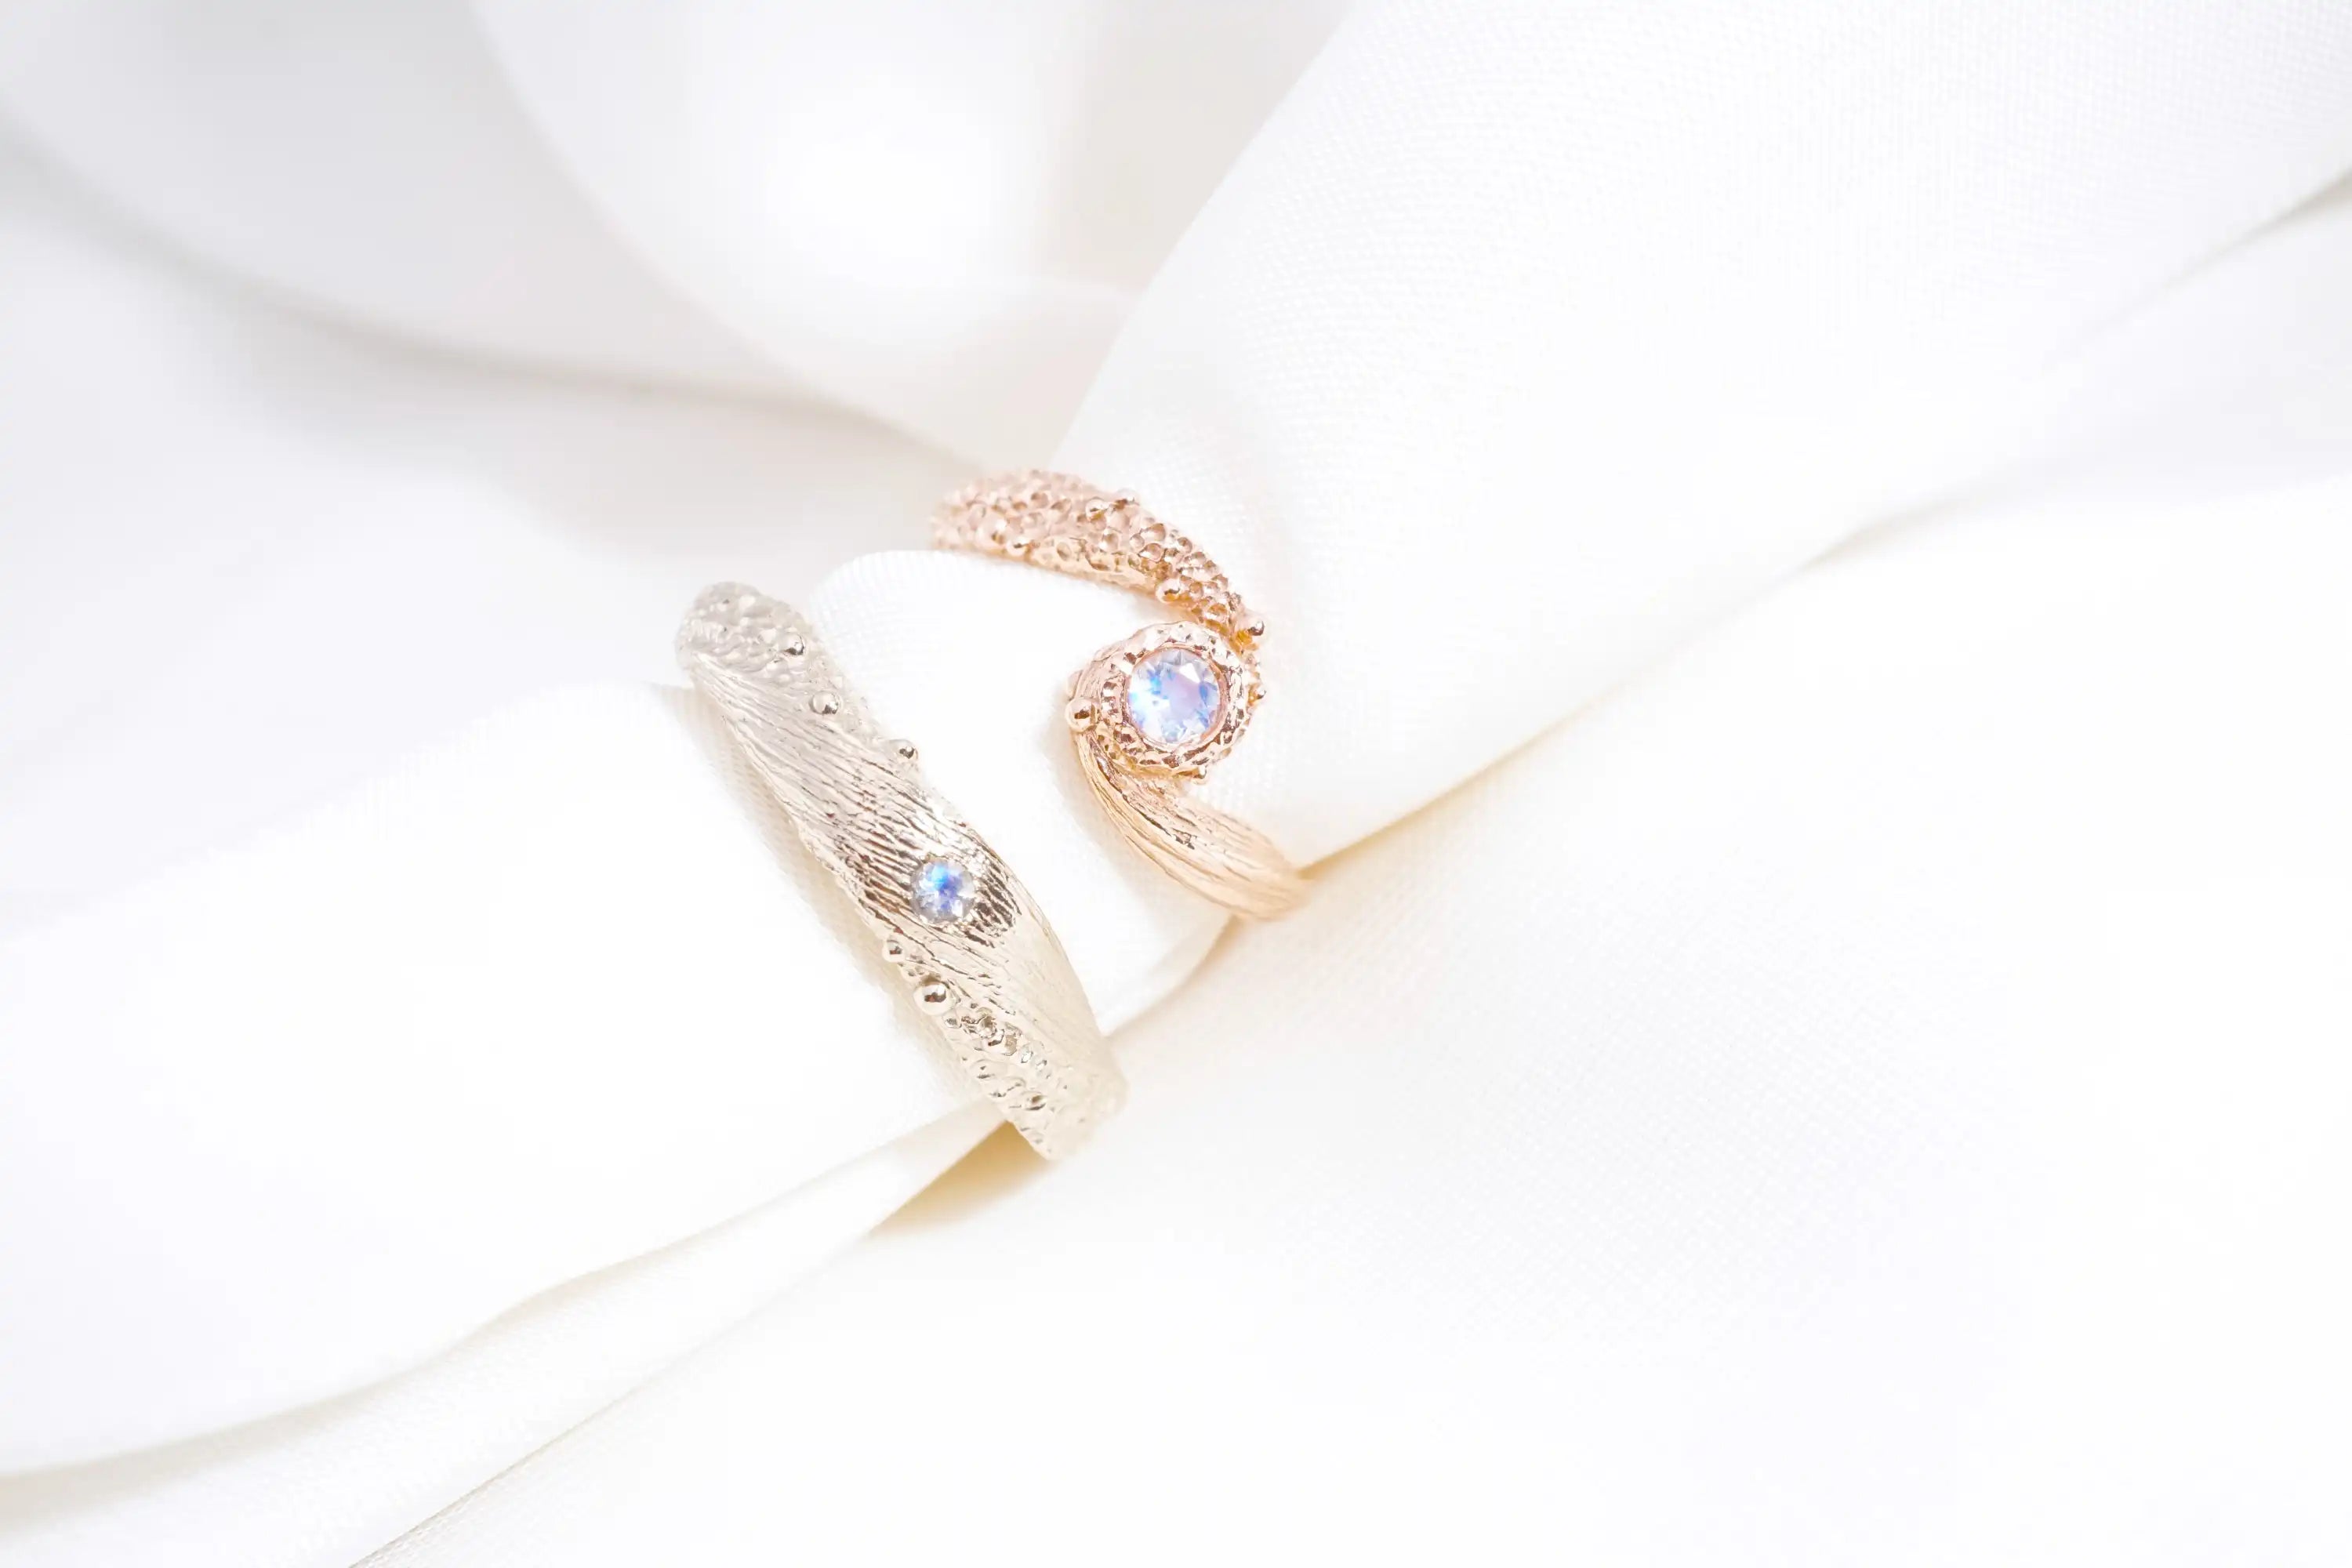 Chia Jewelry月光石訂製婚戒對戒，小宇宙設計，跳脫傳統風格